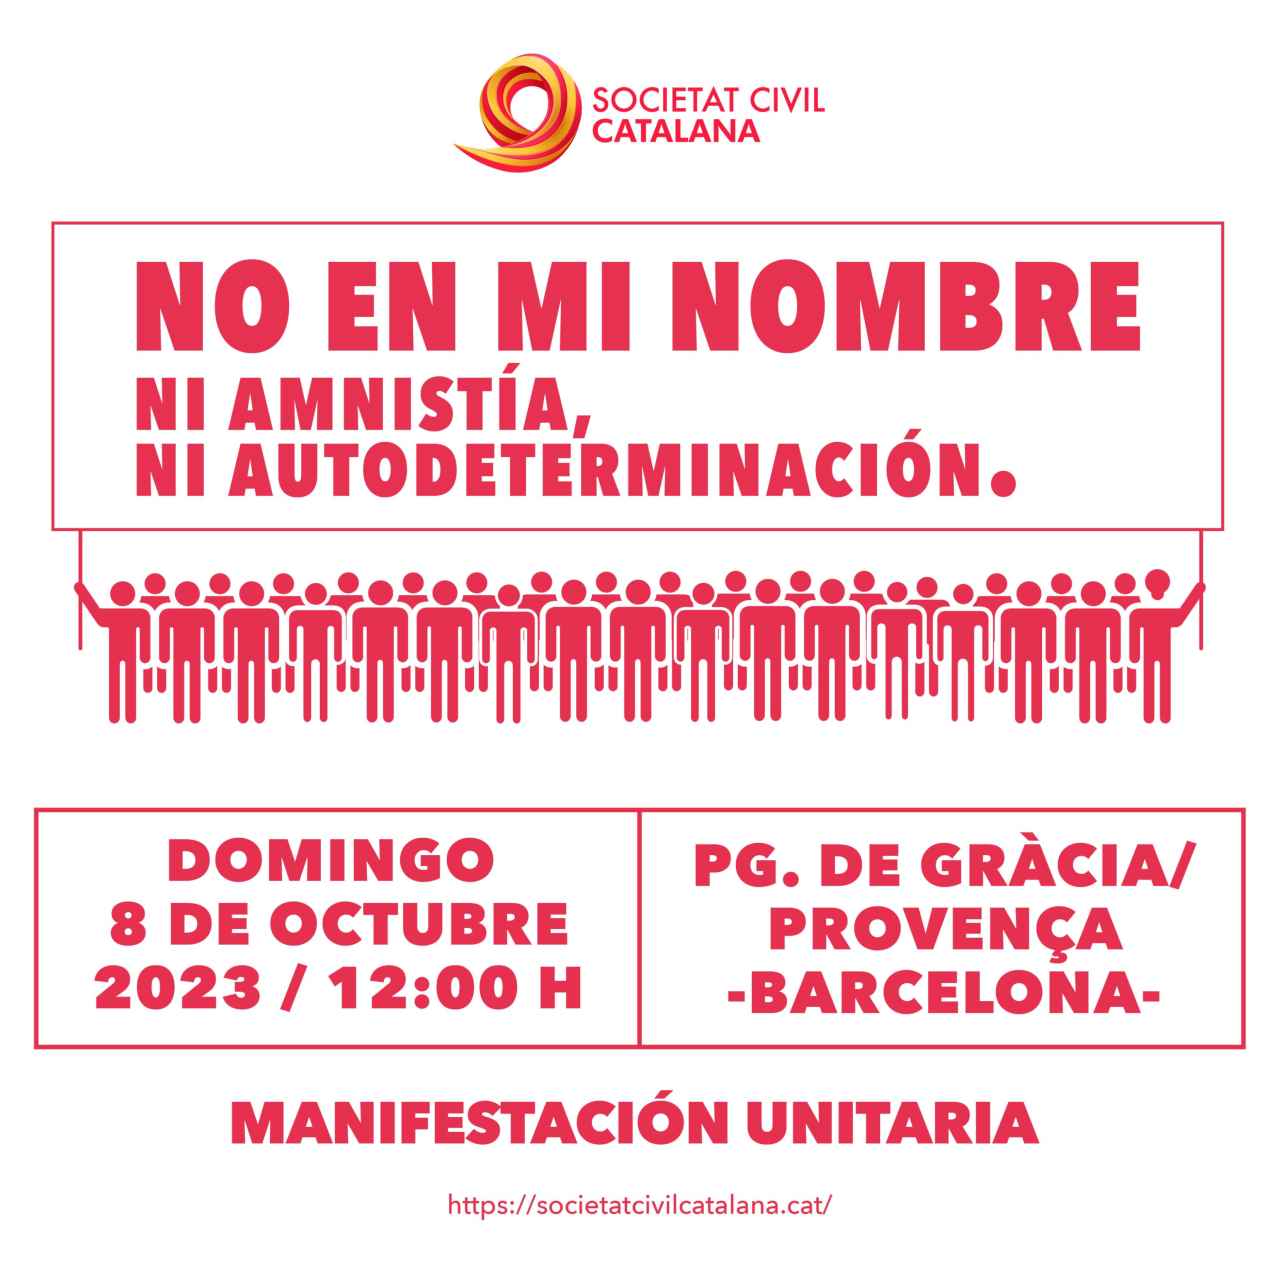 Cartel de la manifestación de este domingo 8 de octubre a mediodía en el Paseo de Gracia de Barcelona